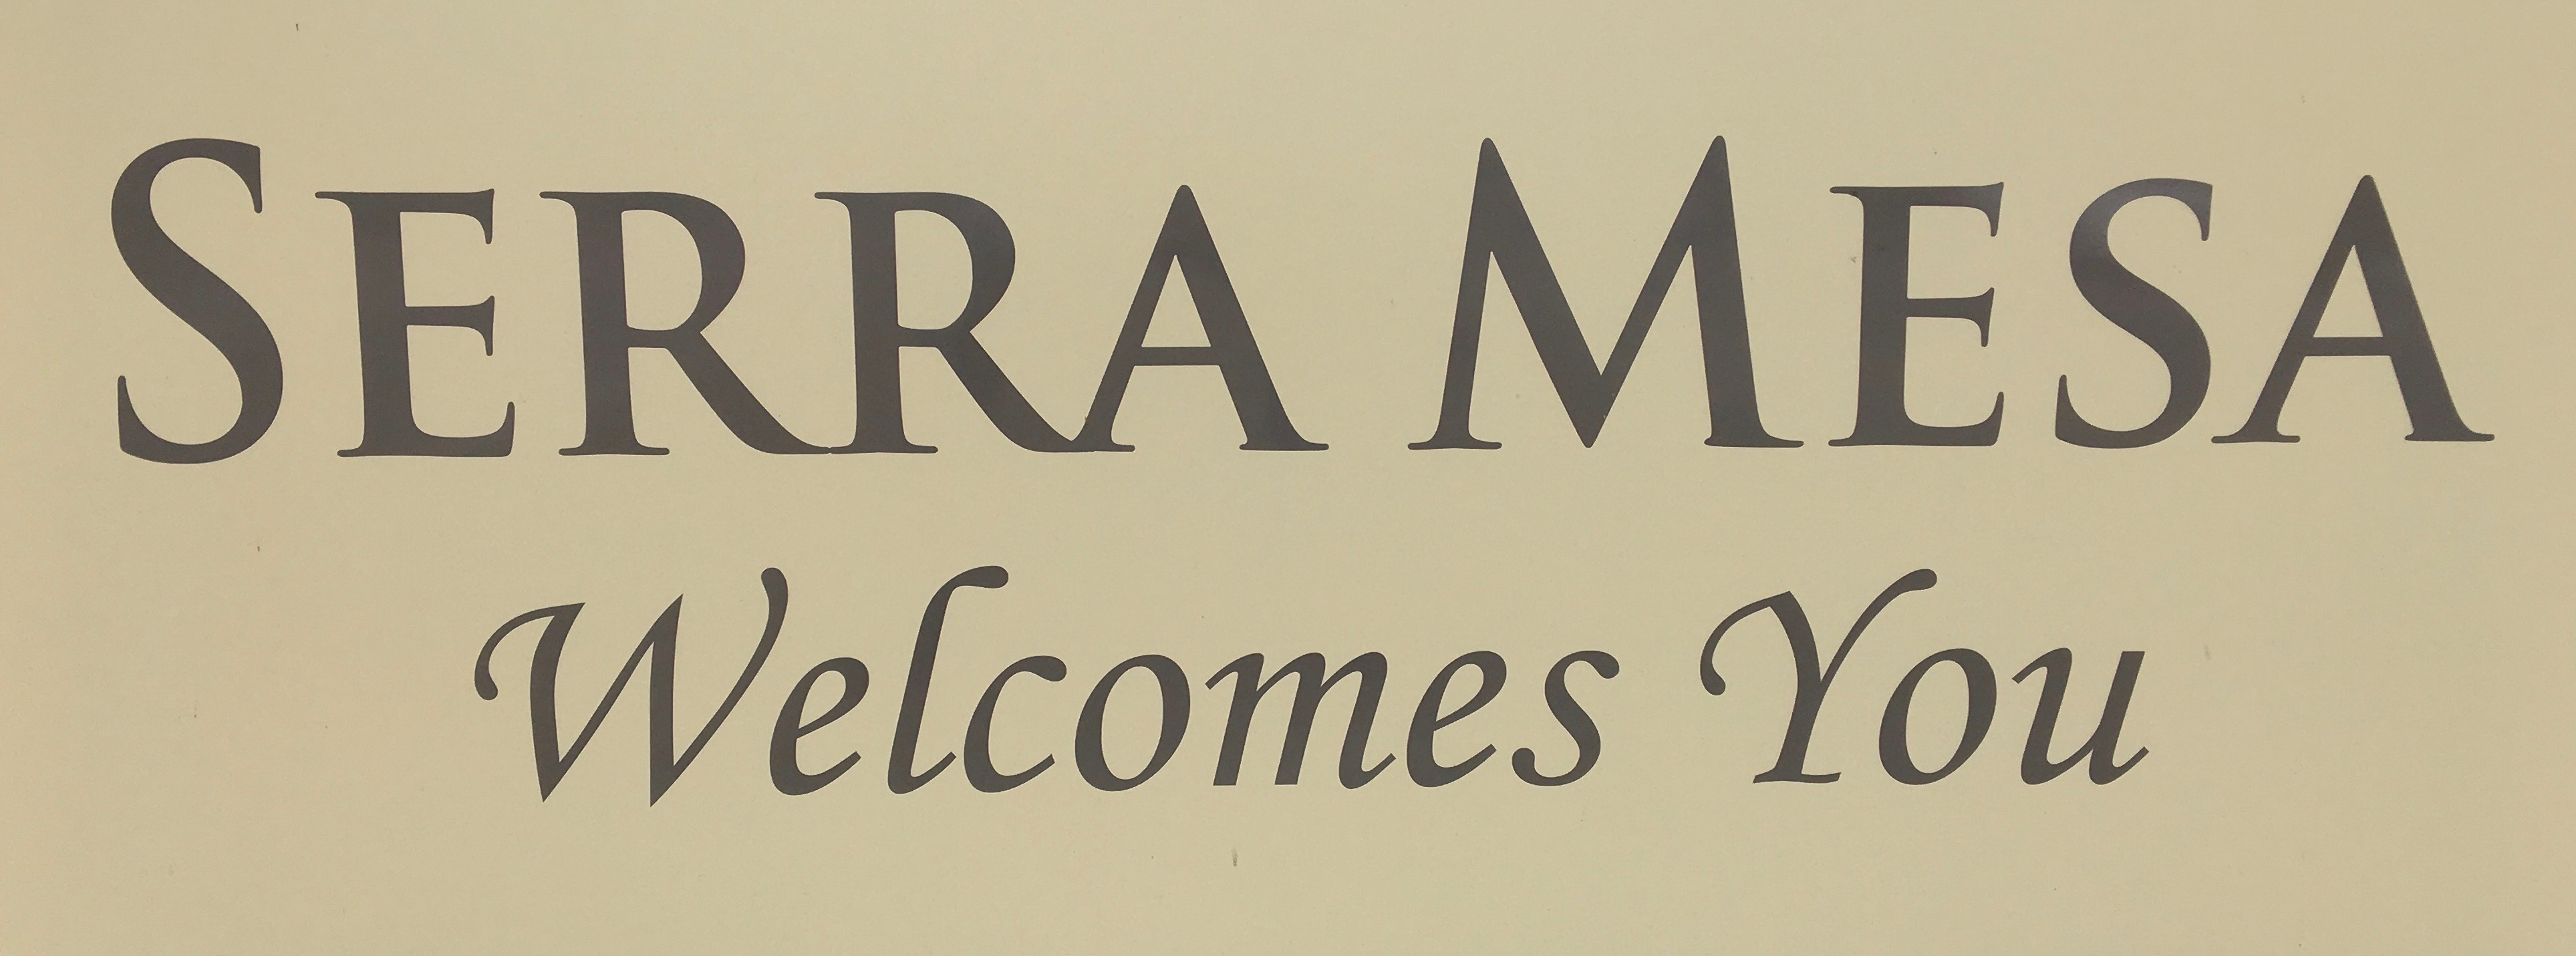 Serra Mesa Welcomes You